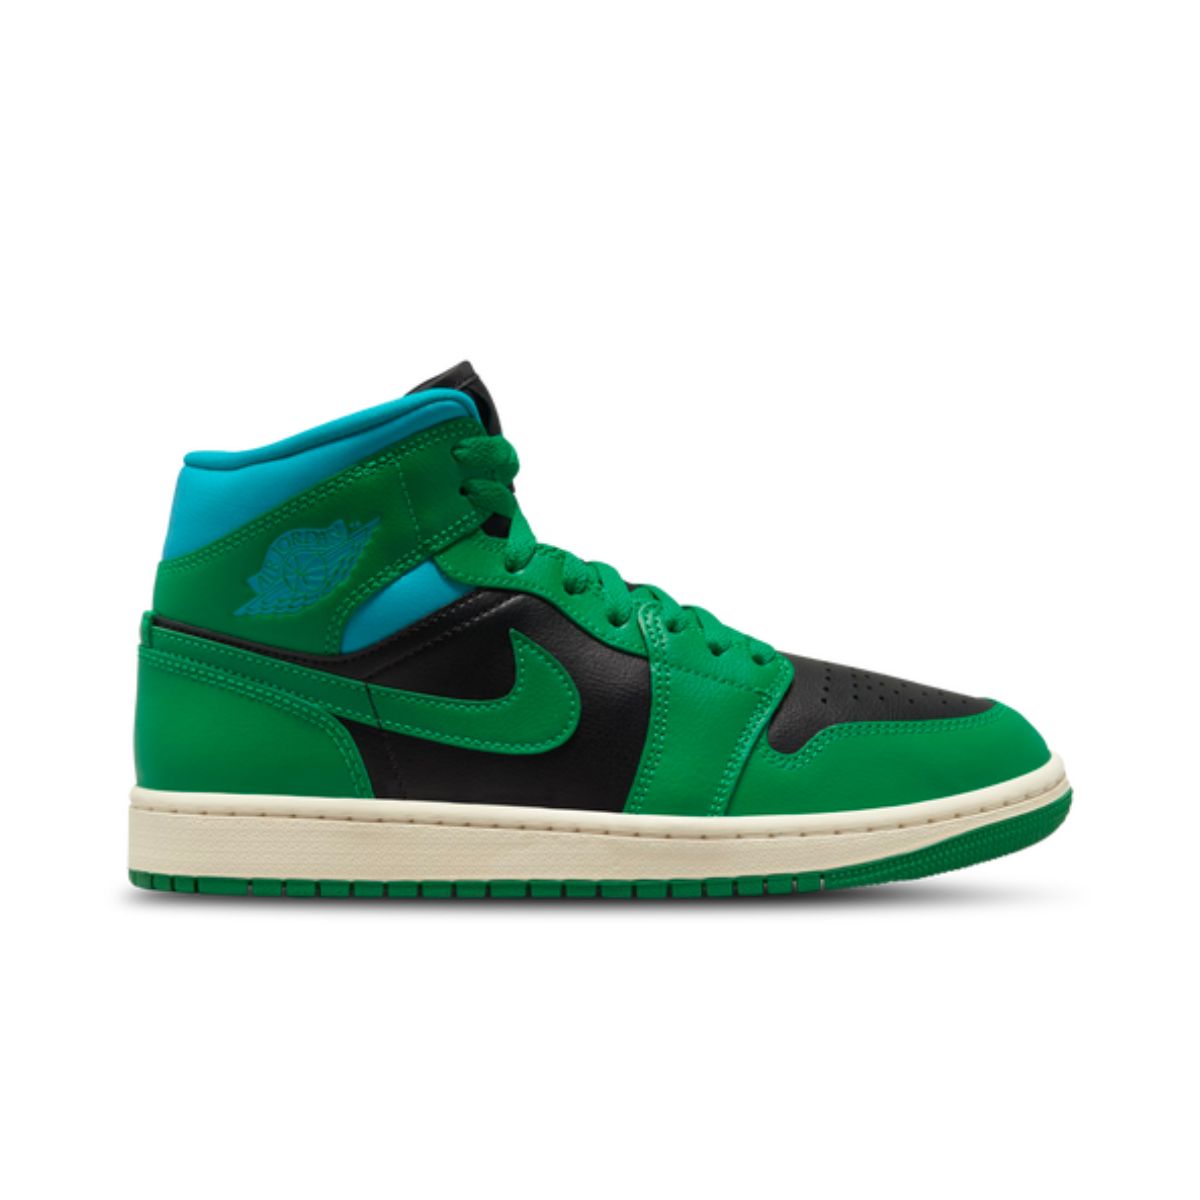 Green Jordans Replacement Shoelaces